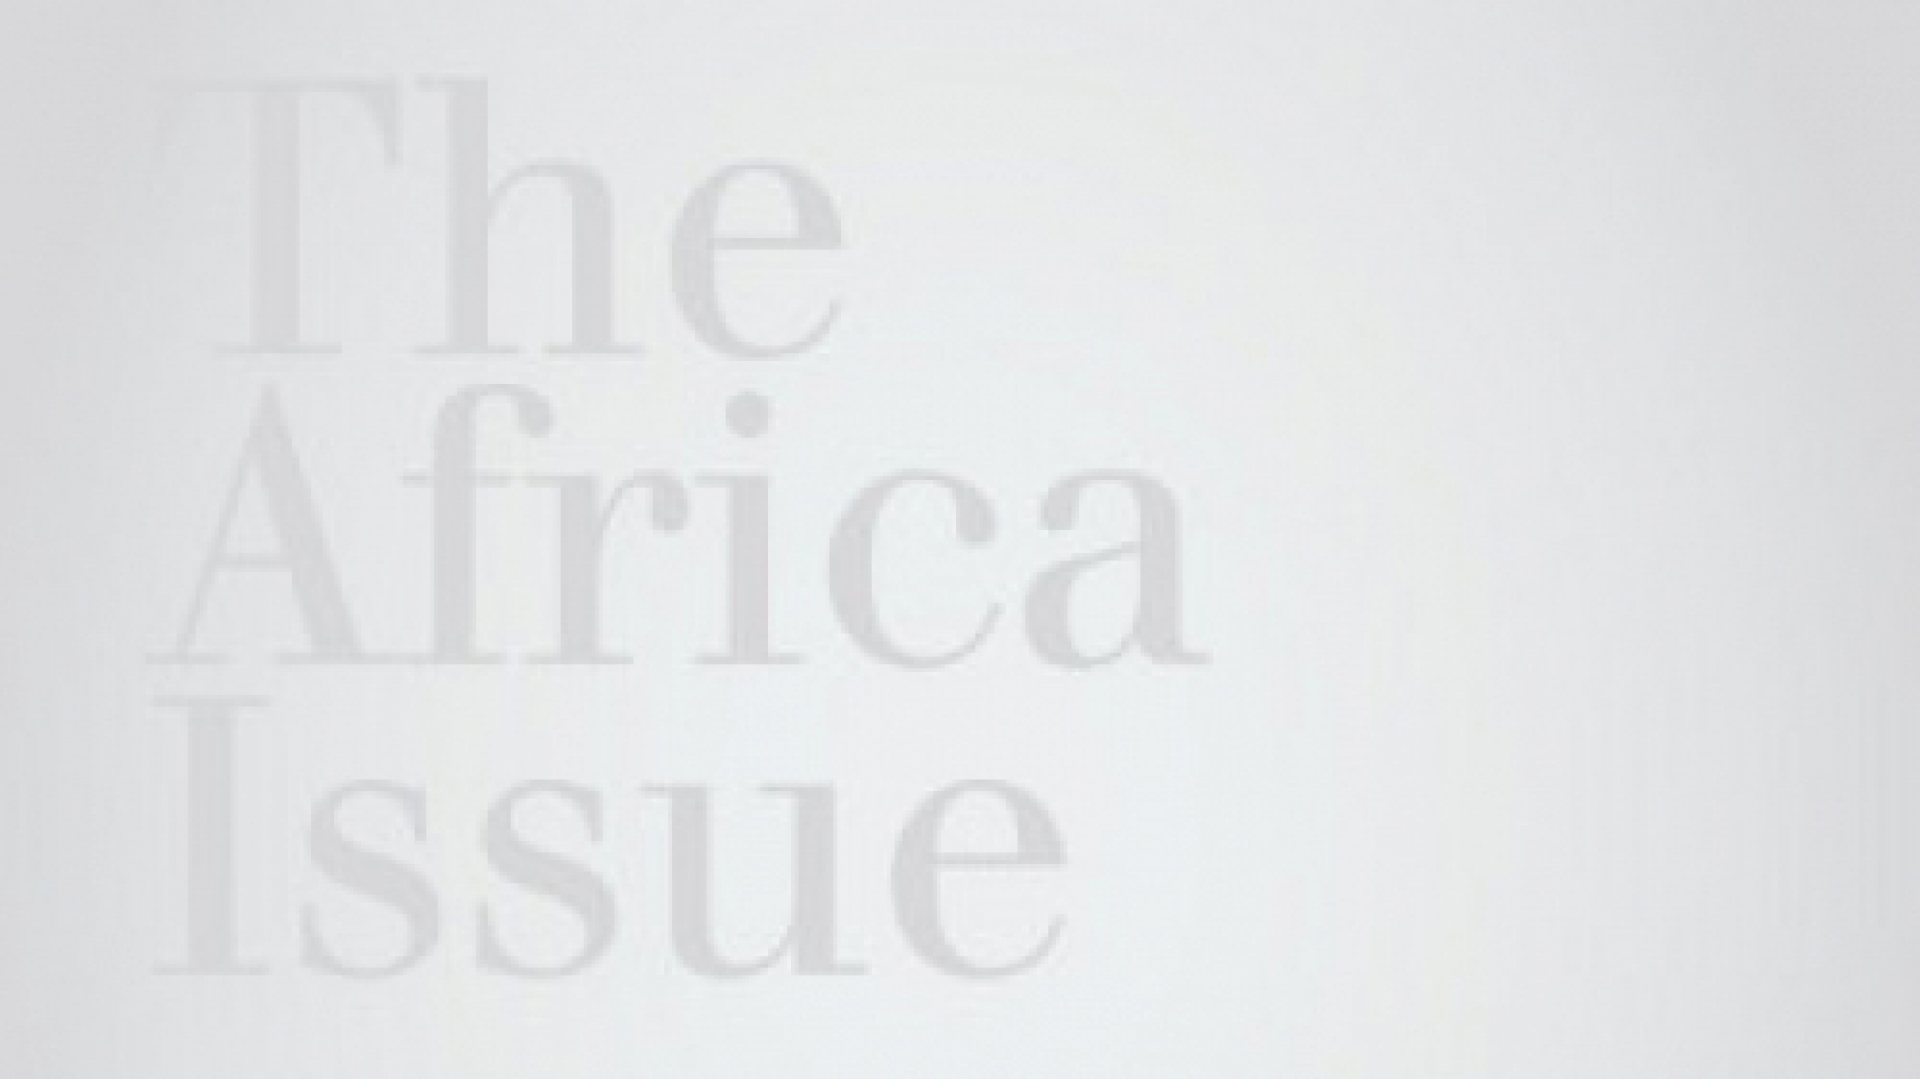 KLINGER News 02/2013 - The Africa Issue